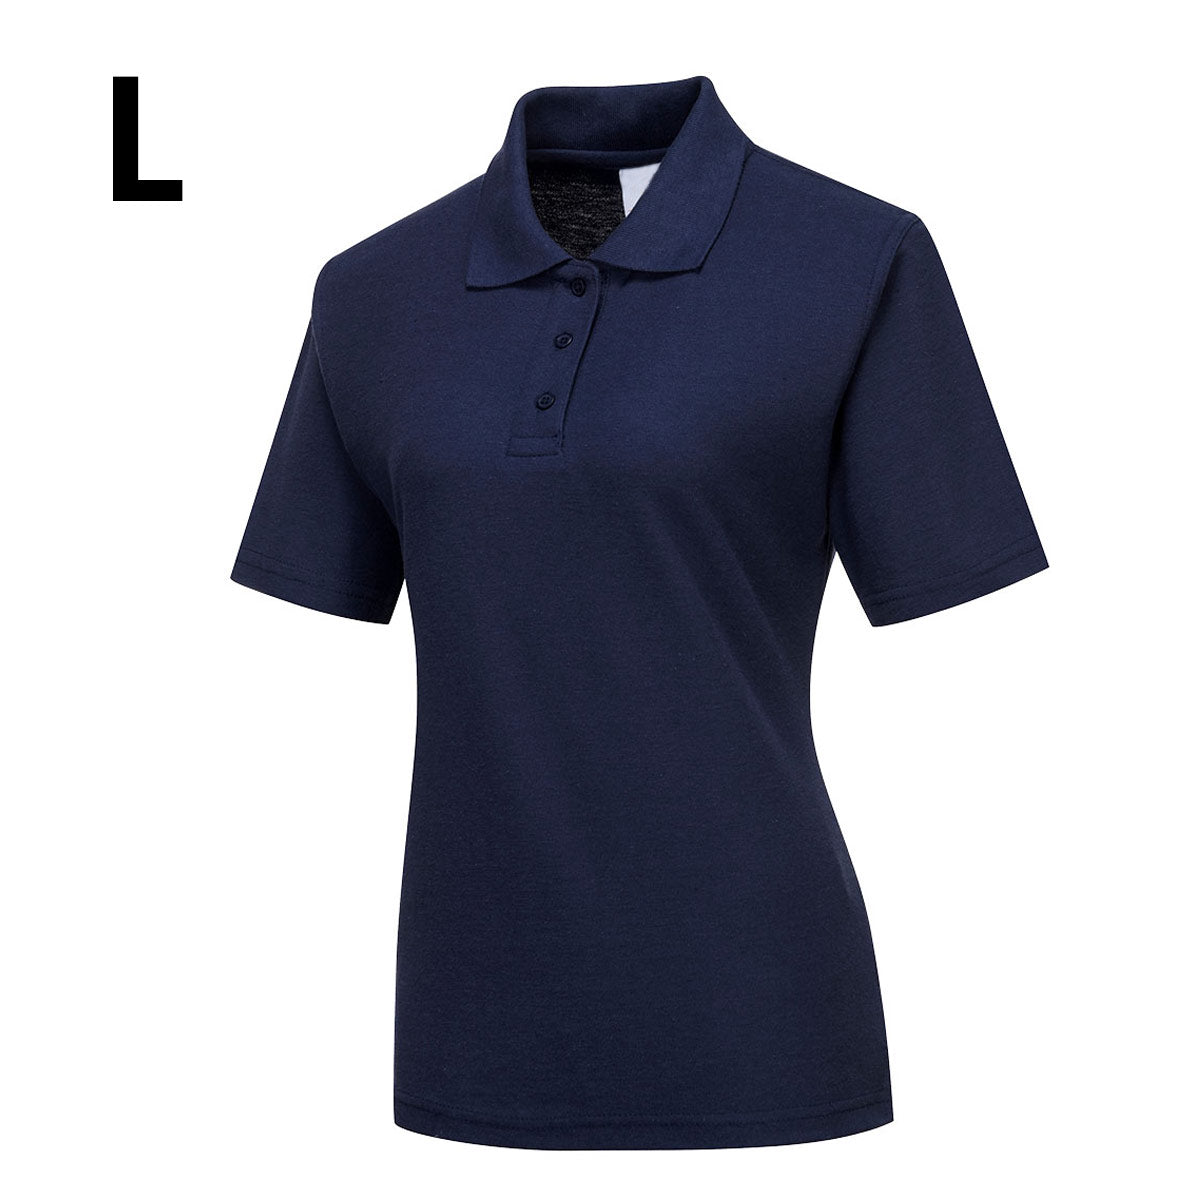 Poloskjorte til damer - Marine blå - størrelse: L